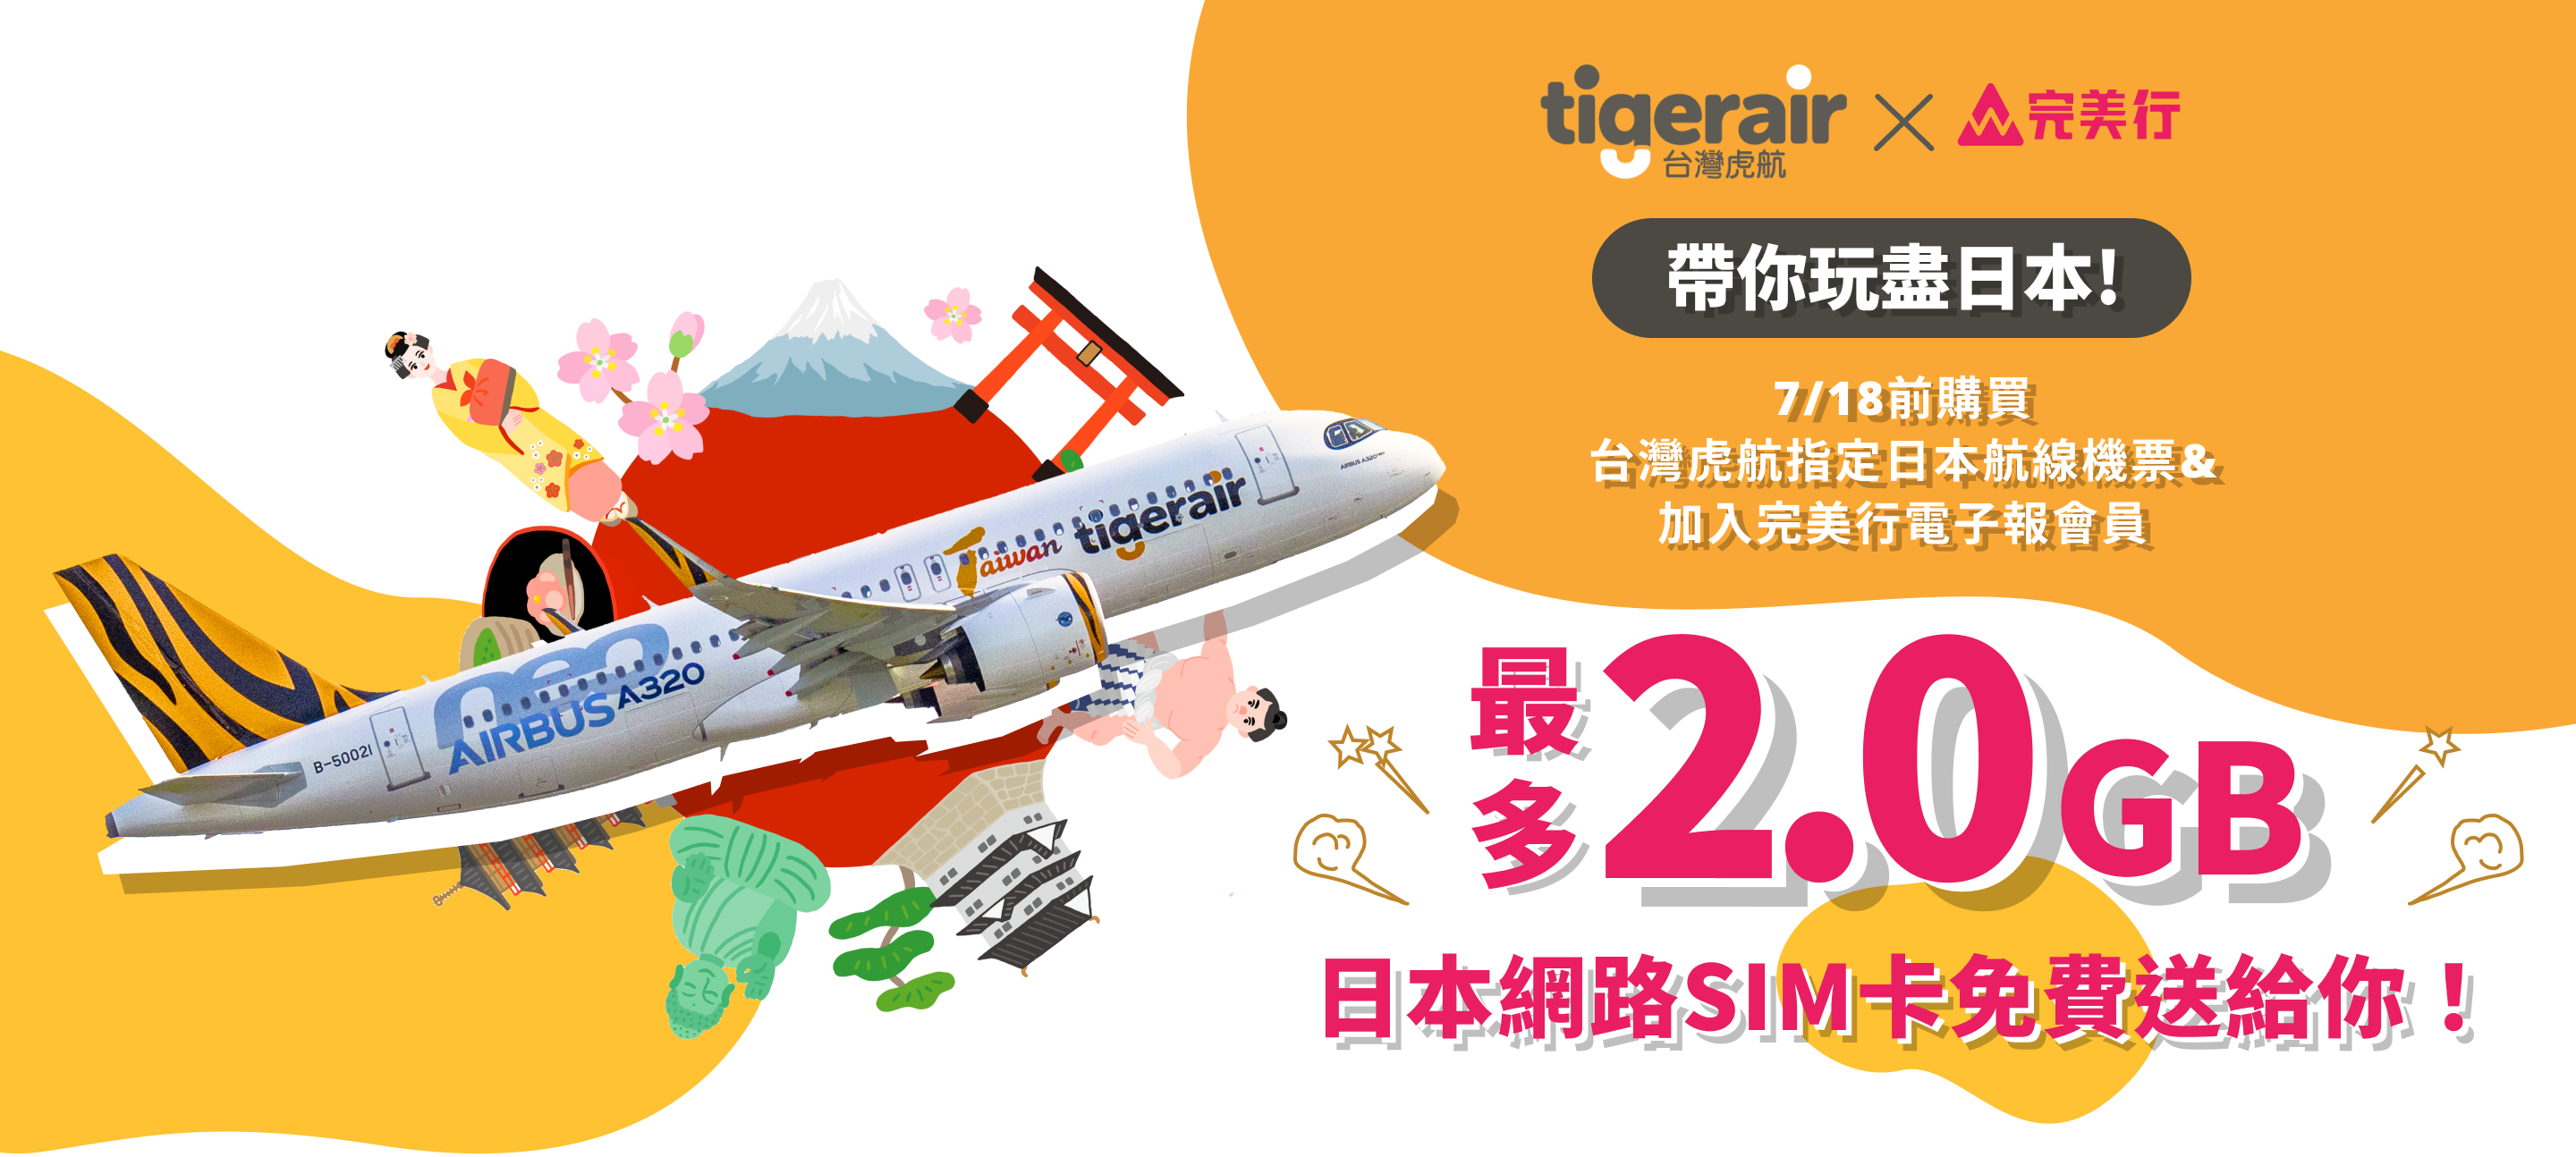 7/18前購買台灣虎航指定日本航線機票&加入完美行電子報會員等指定條件達成 | 送你免費網路SIM卡!!最多2.0GB - WAmazing